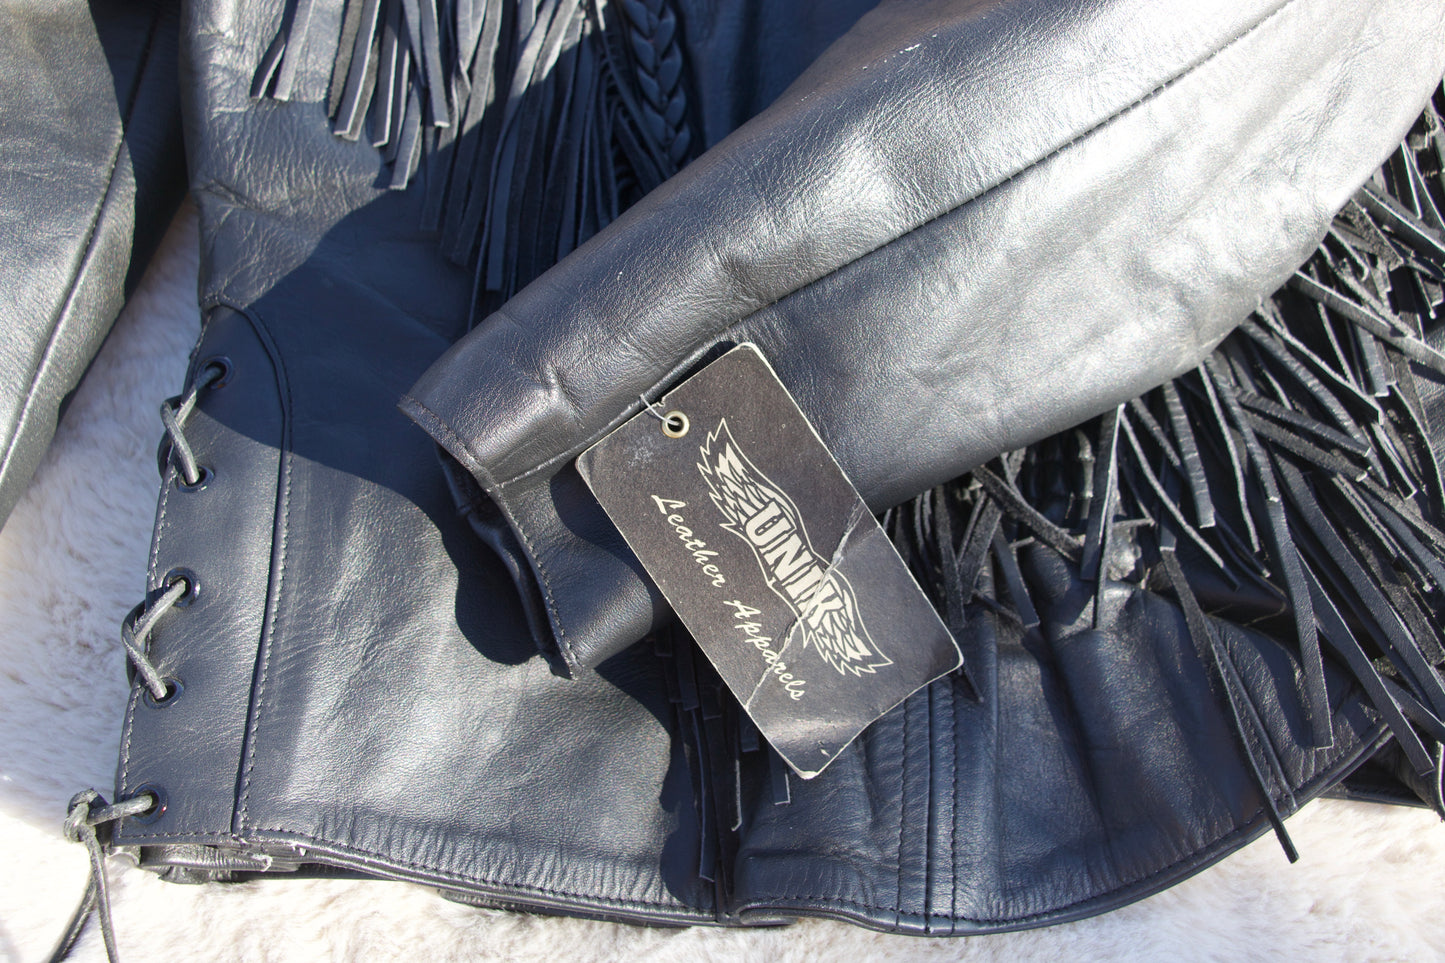 Vintage Fringe Leather Jacket by Unik